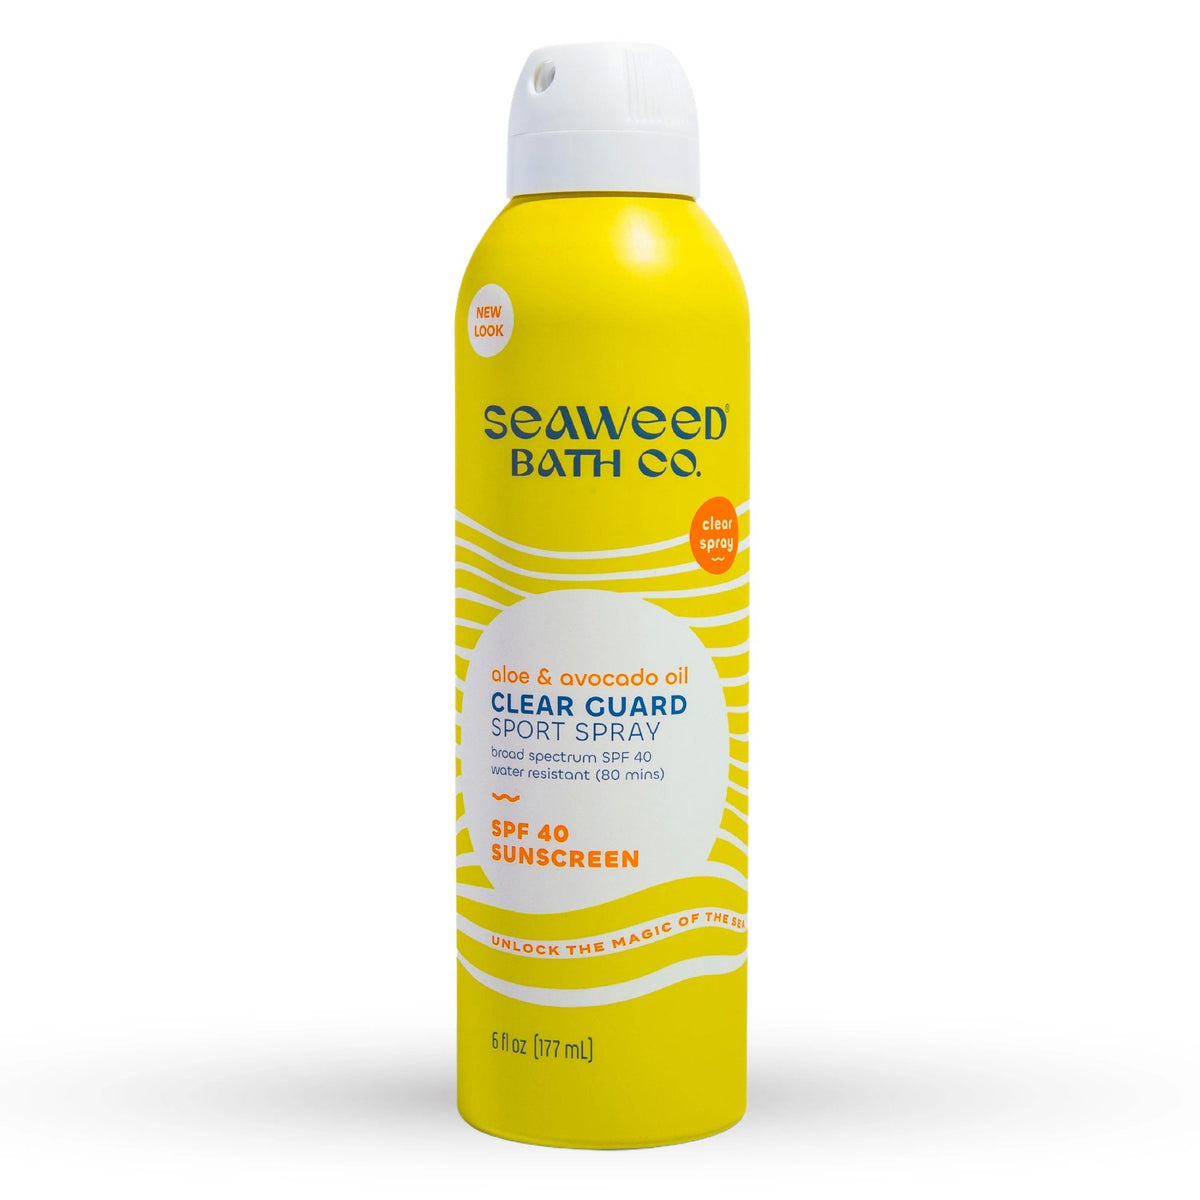 The Seaweed Bath Co. Clear Guard SPF 40 Sport 6 oz Spray